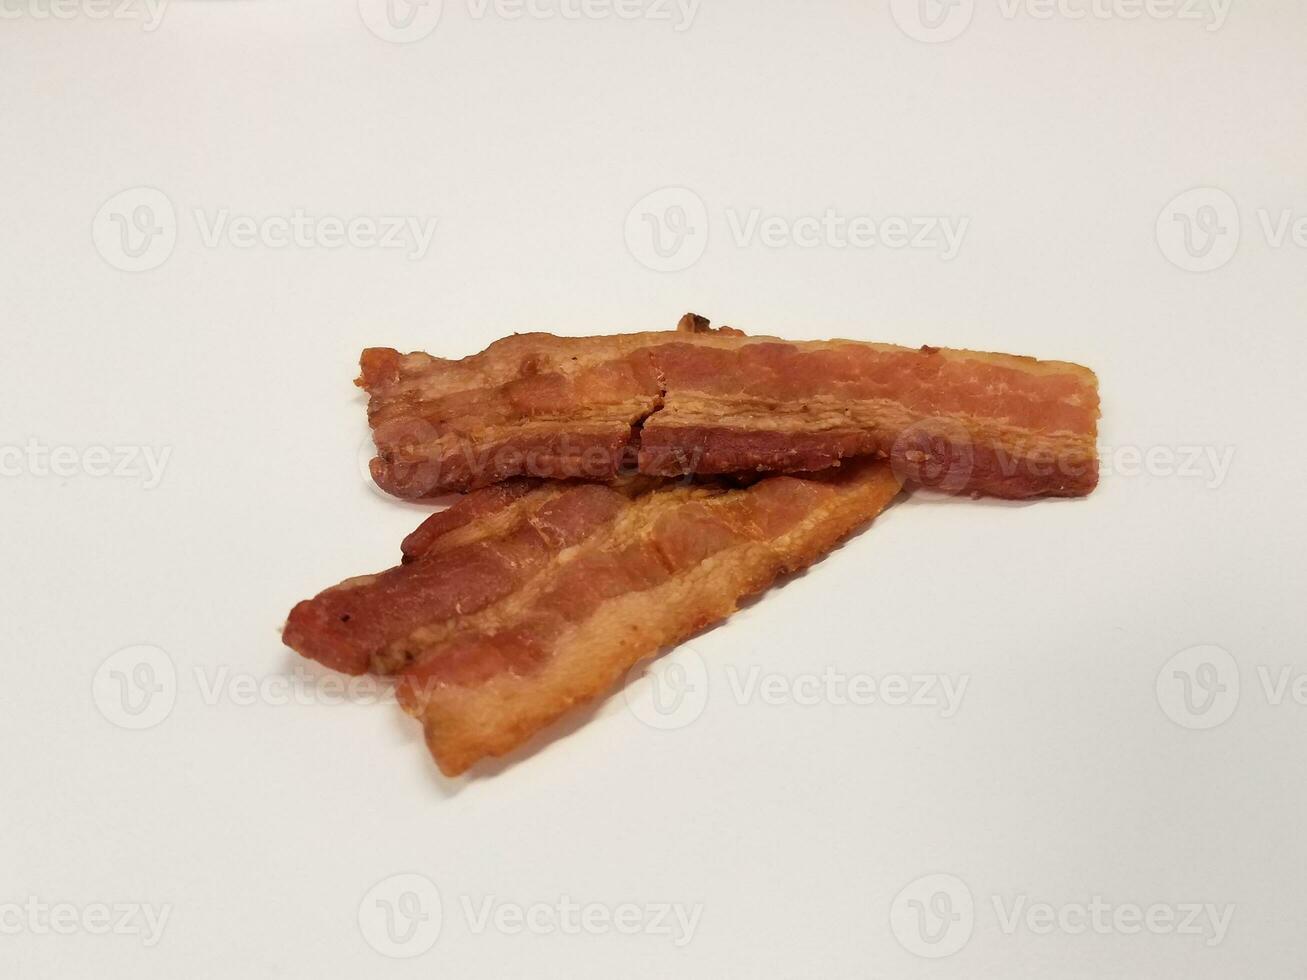 baconremsa eller kött på vit yta eller bord foto